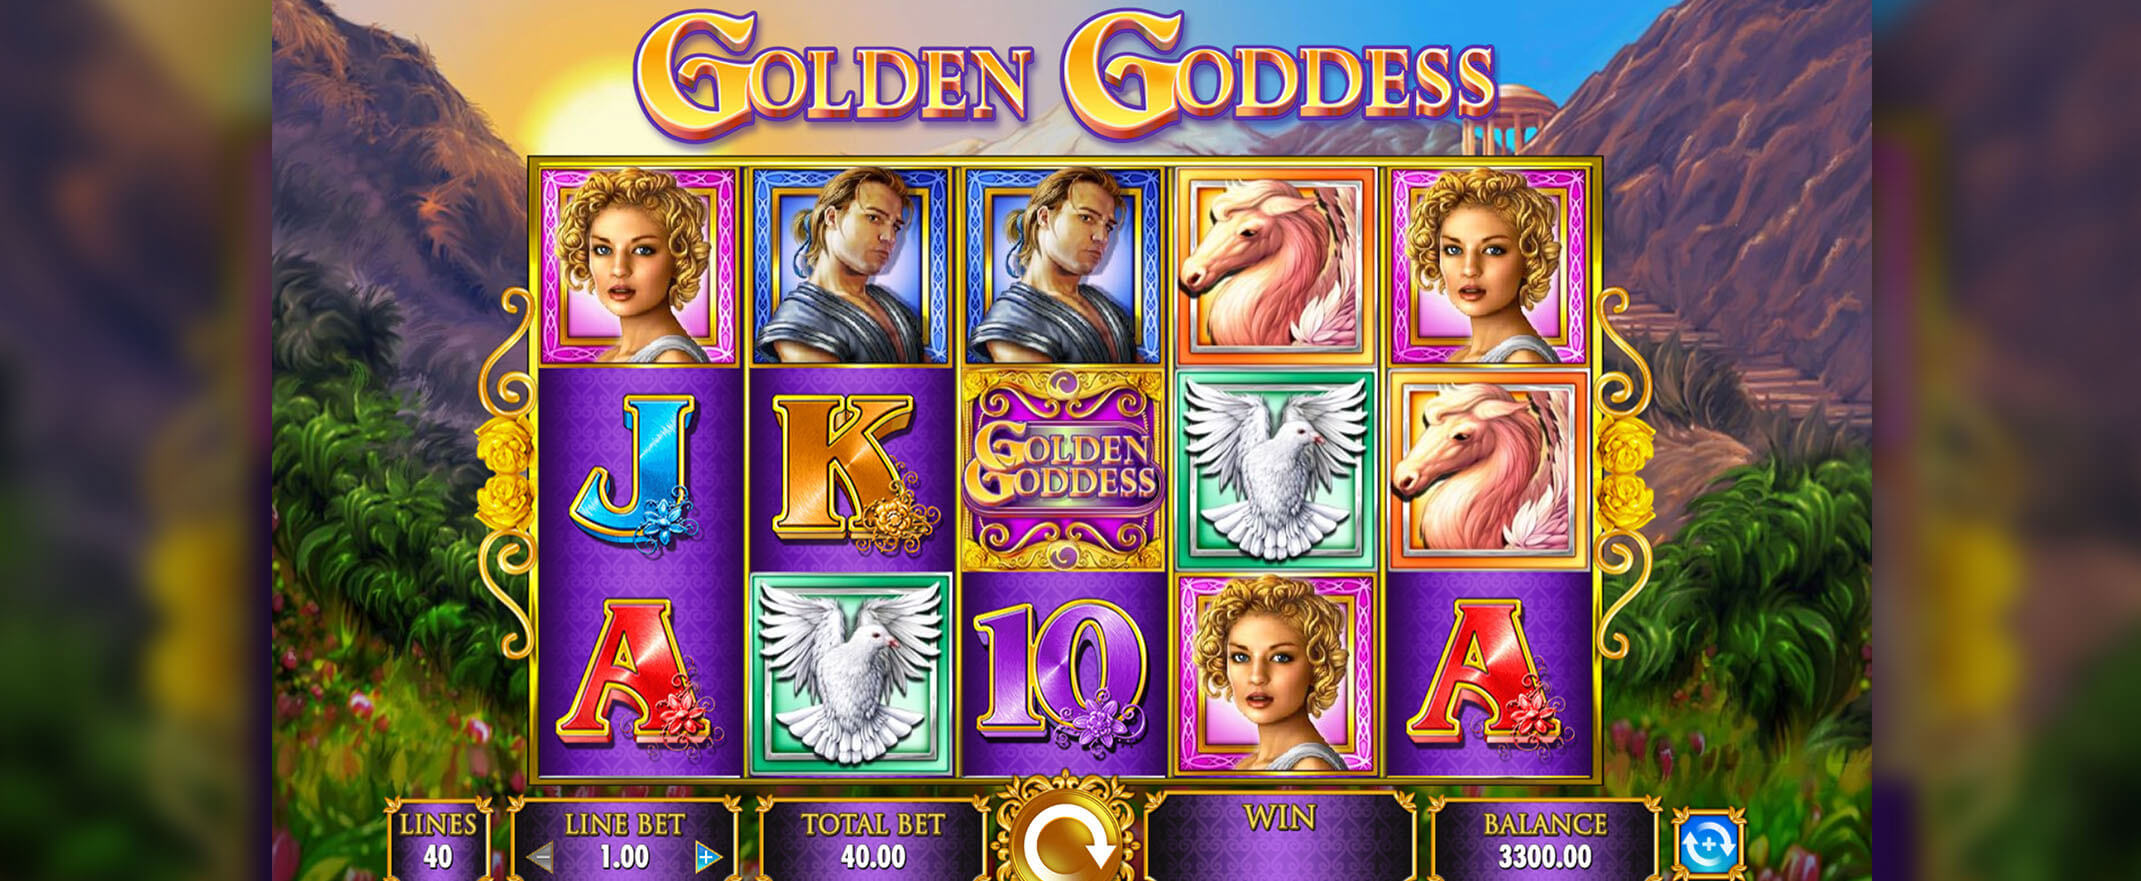 Golden Goddess slot by IGT